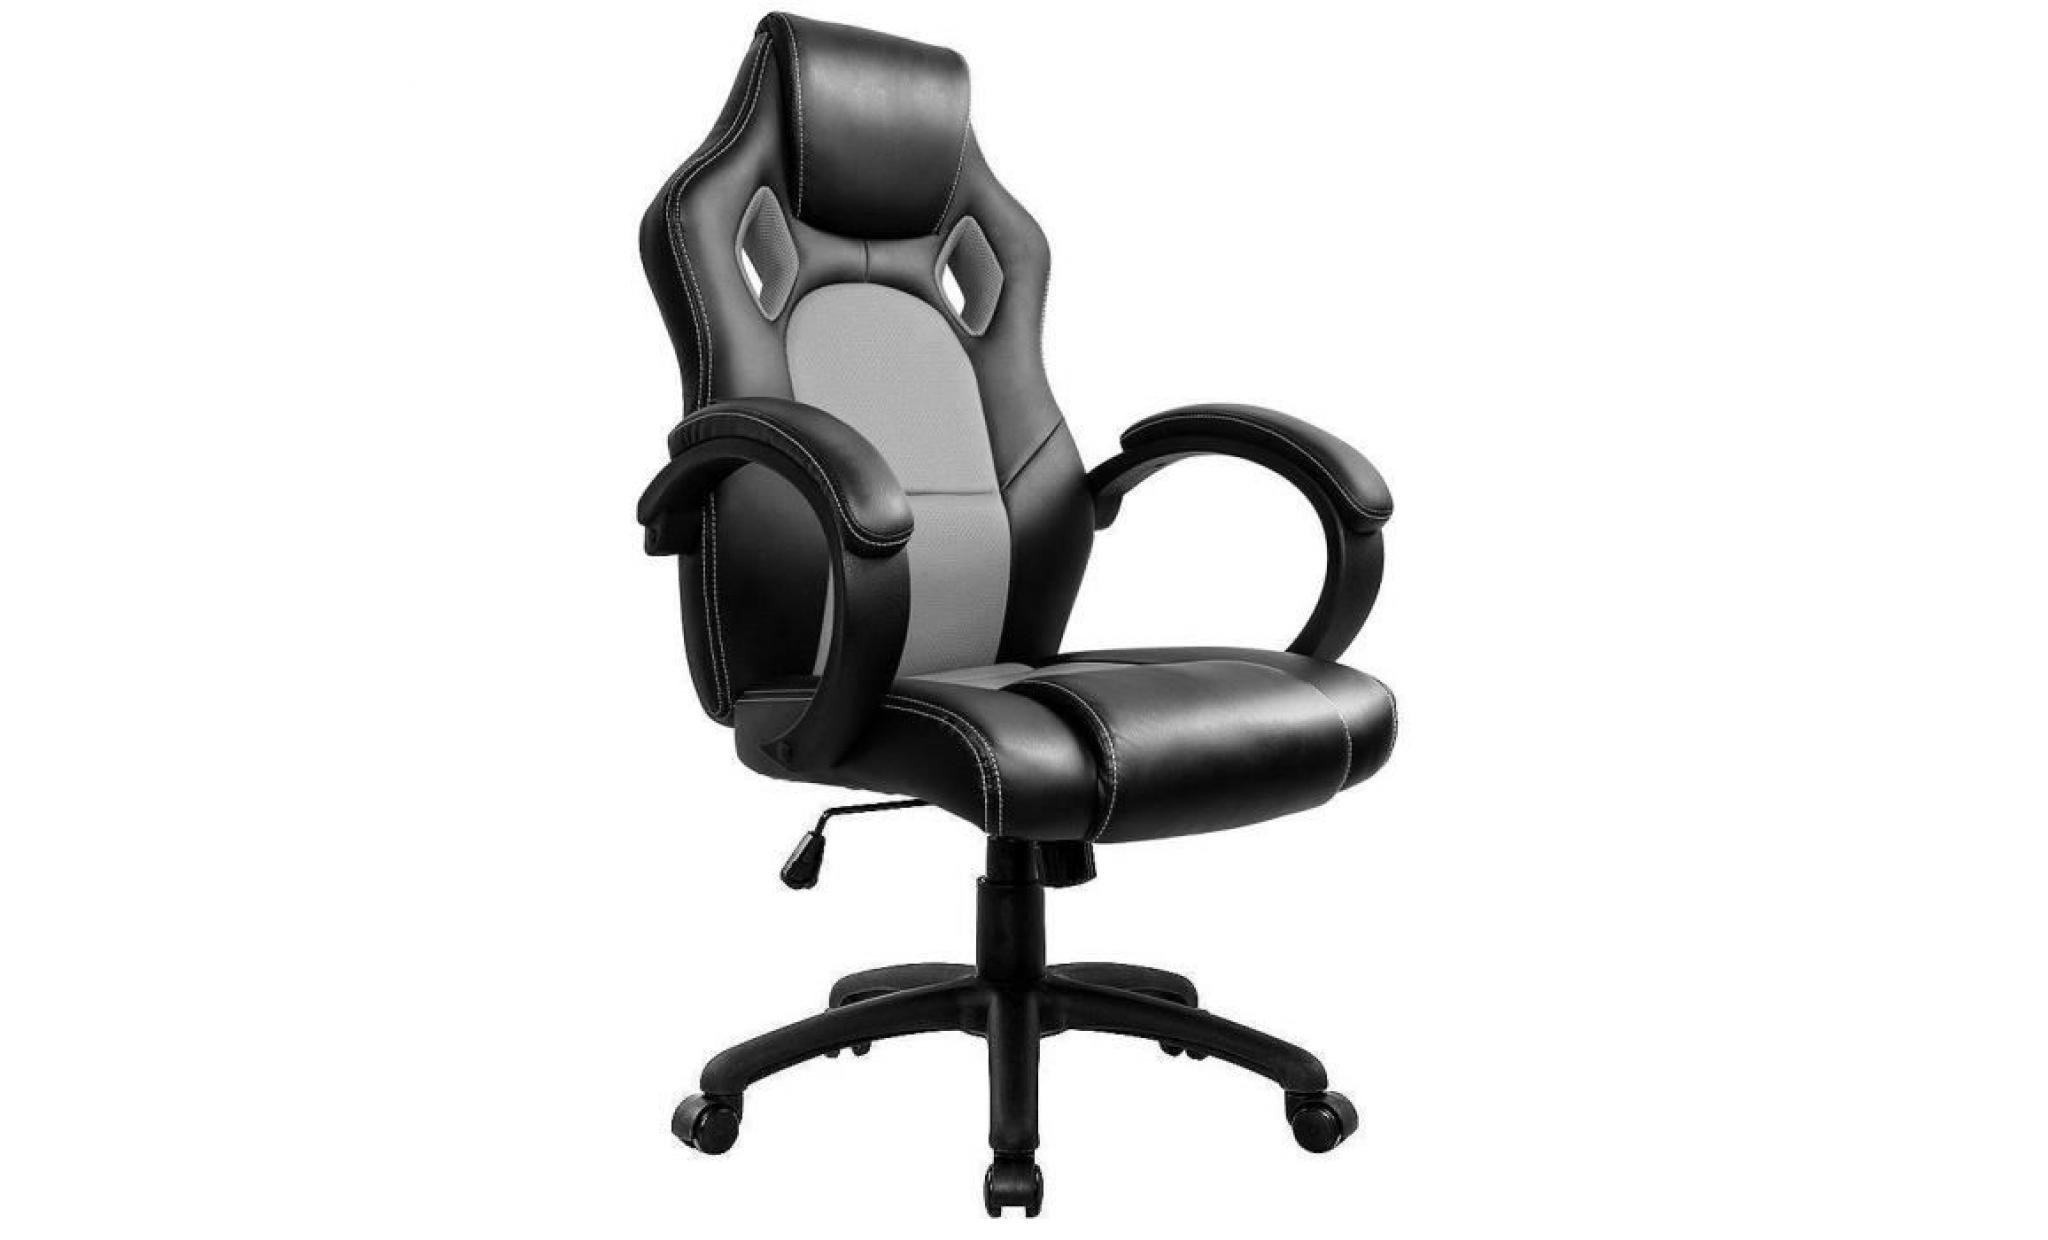 chaise de bureau gaming chaise   moderne confortable ergonomique en similicuir pu   hauteur réglable   gris   intimate wm heart